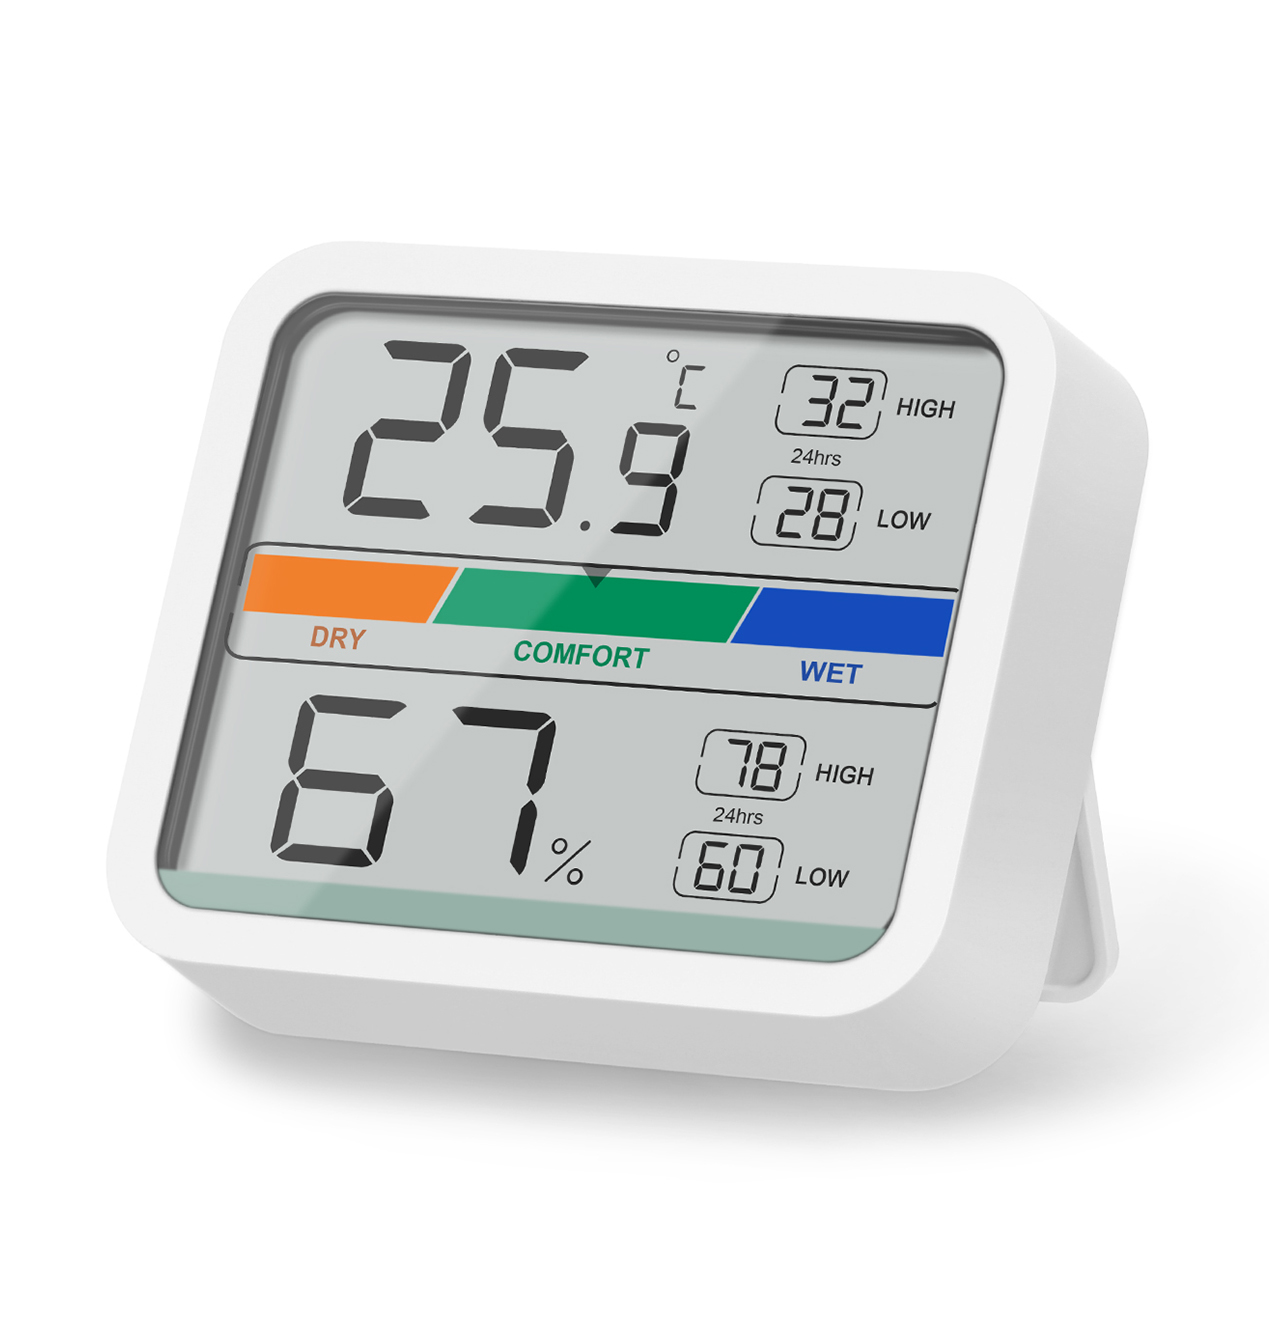 LIORQUE Hygrometer Indoor Thermometer, Room Humidity Gauge with